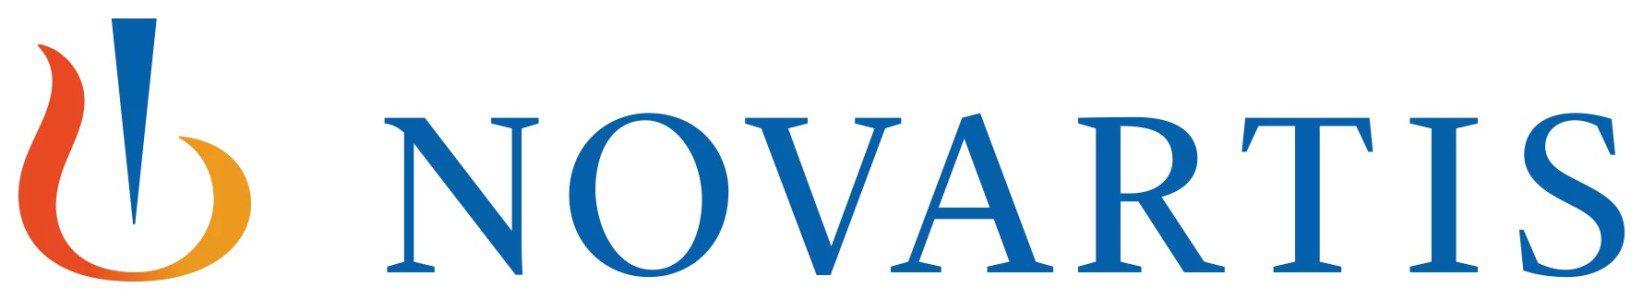 Our Client, logo Novartis